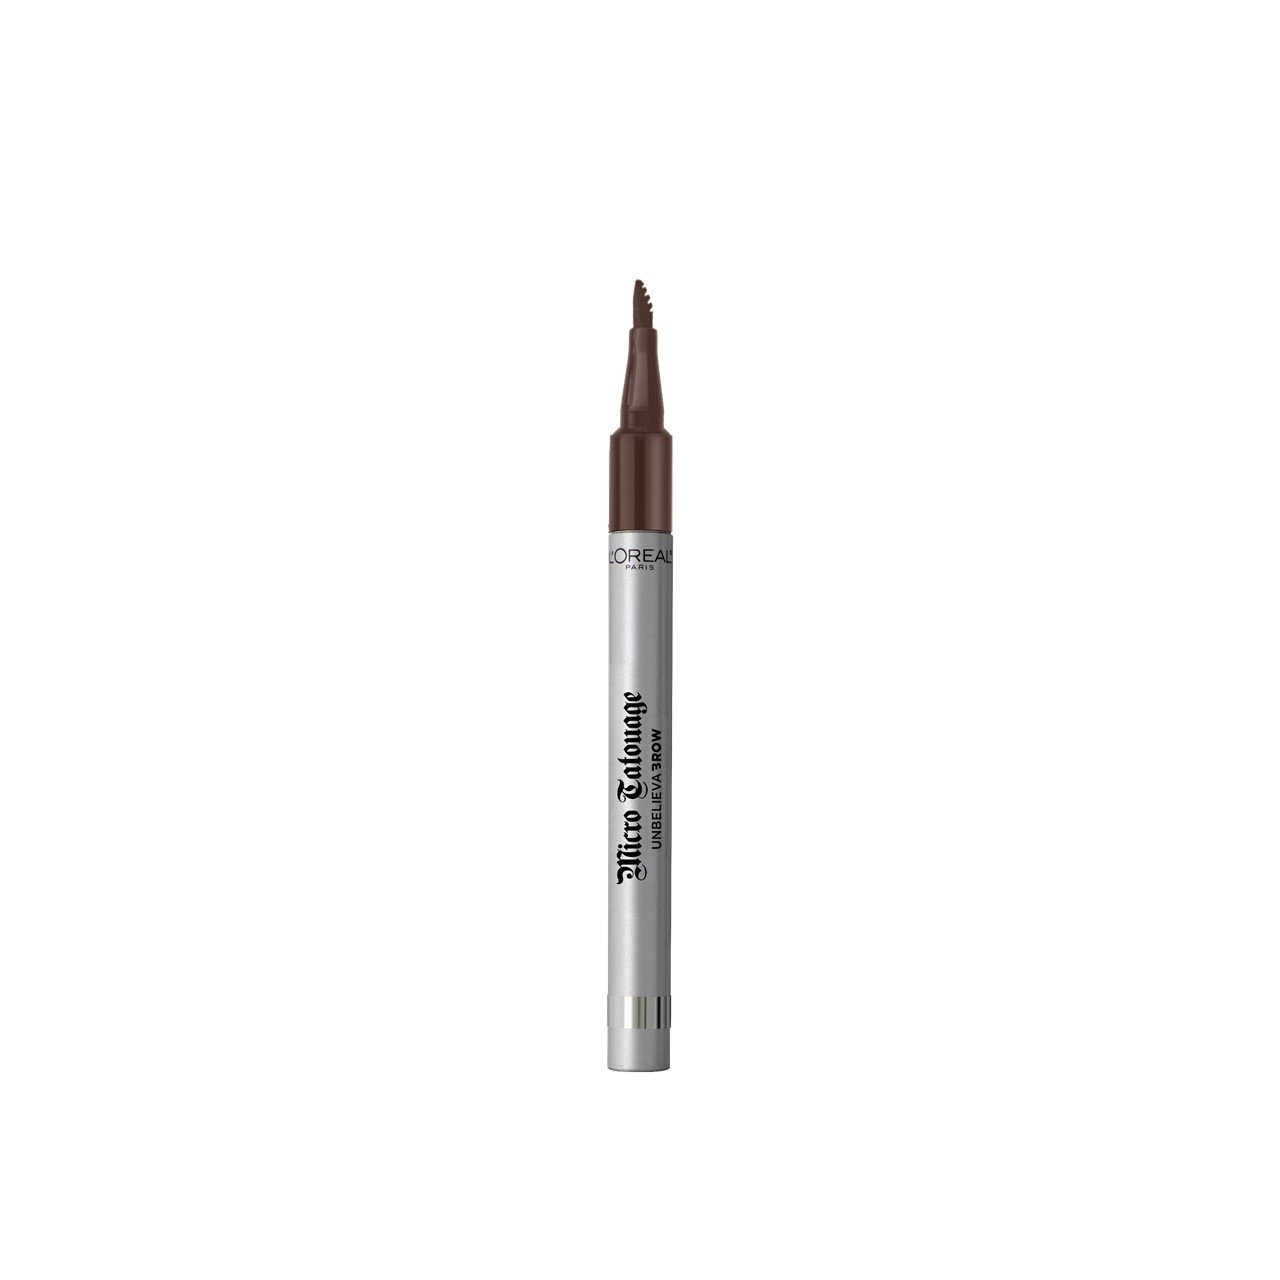 L'Oréal Paris Unbelievabrow Micro Tatouage Brow Pen 108 Dark Brunette